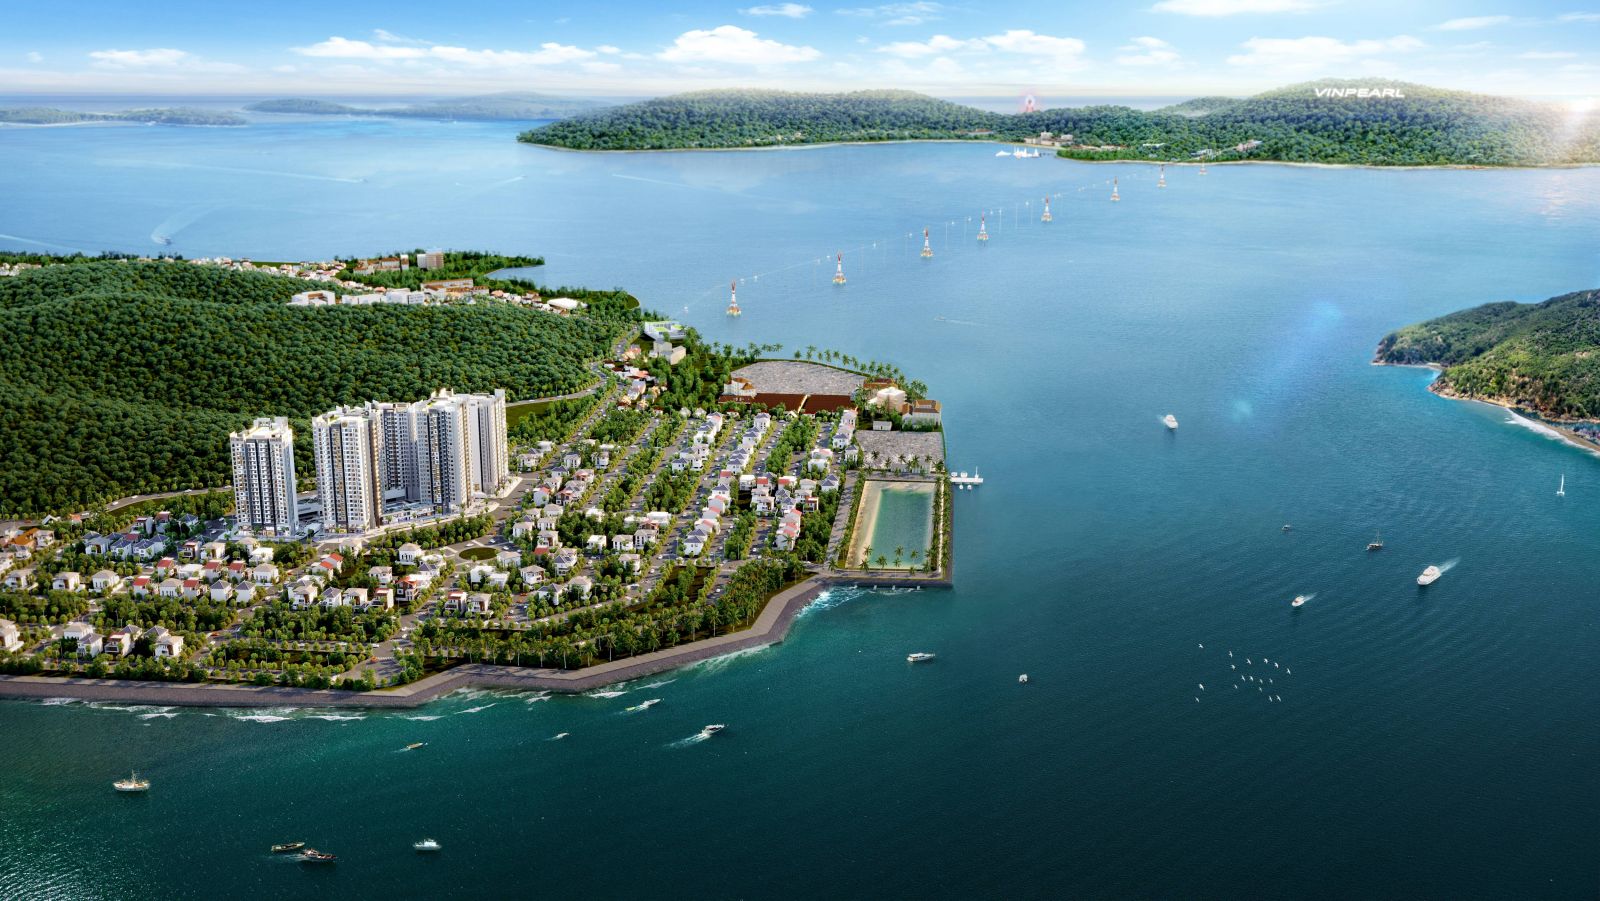 New Galaxy Nha Trang tọa lạc ngay trái tim khu đô thịAn Viênliên kết trực tiếp với đường Trần Phú và đa dạng tiện ích của phố biển. Ảnh Hưng Thịnh Land